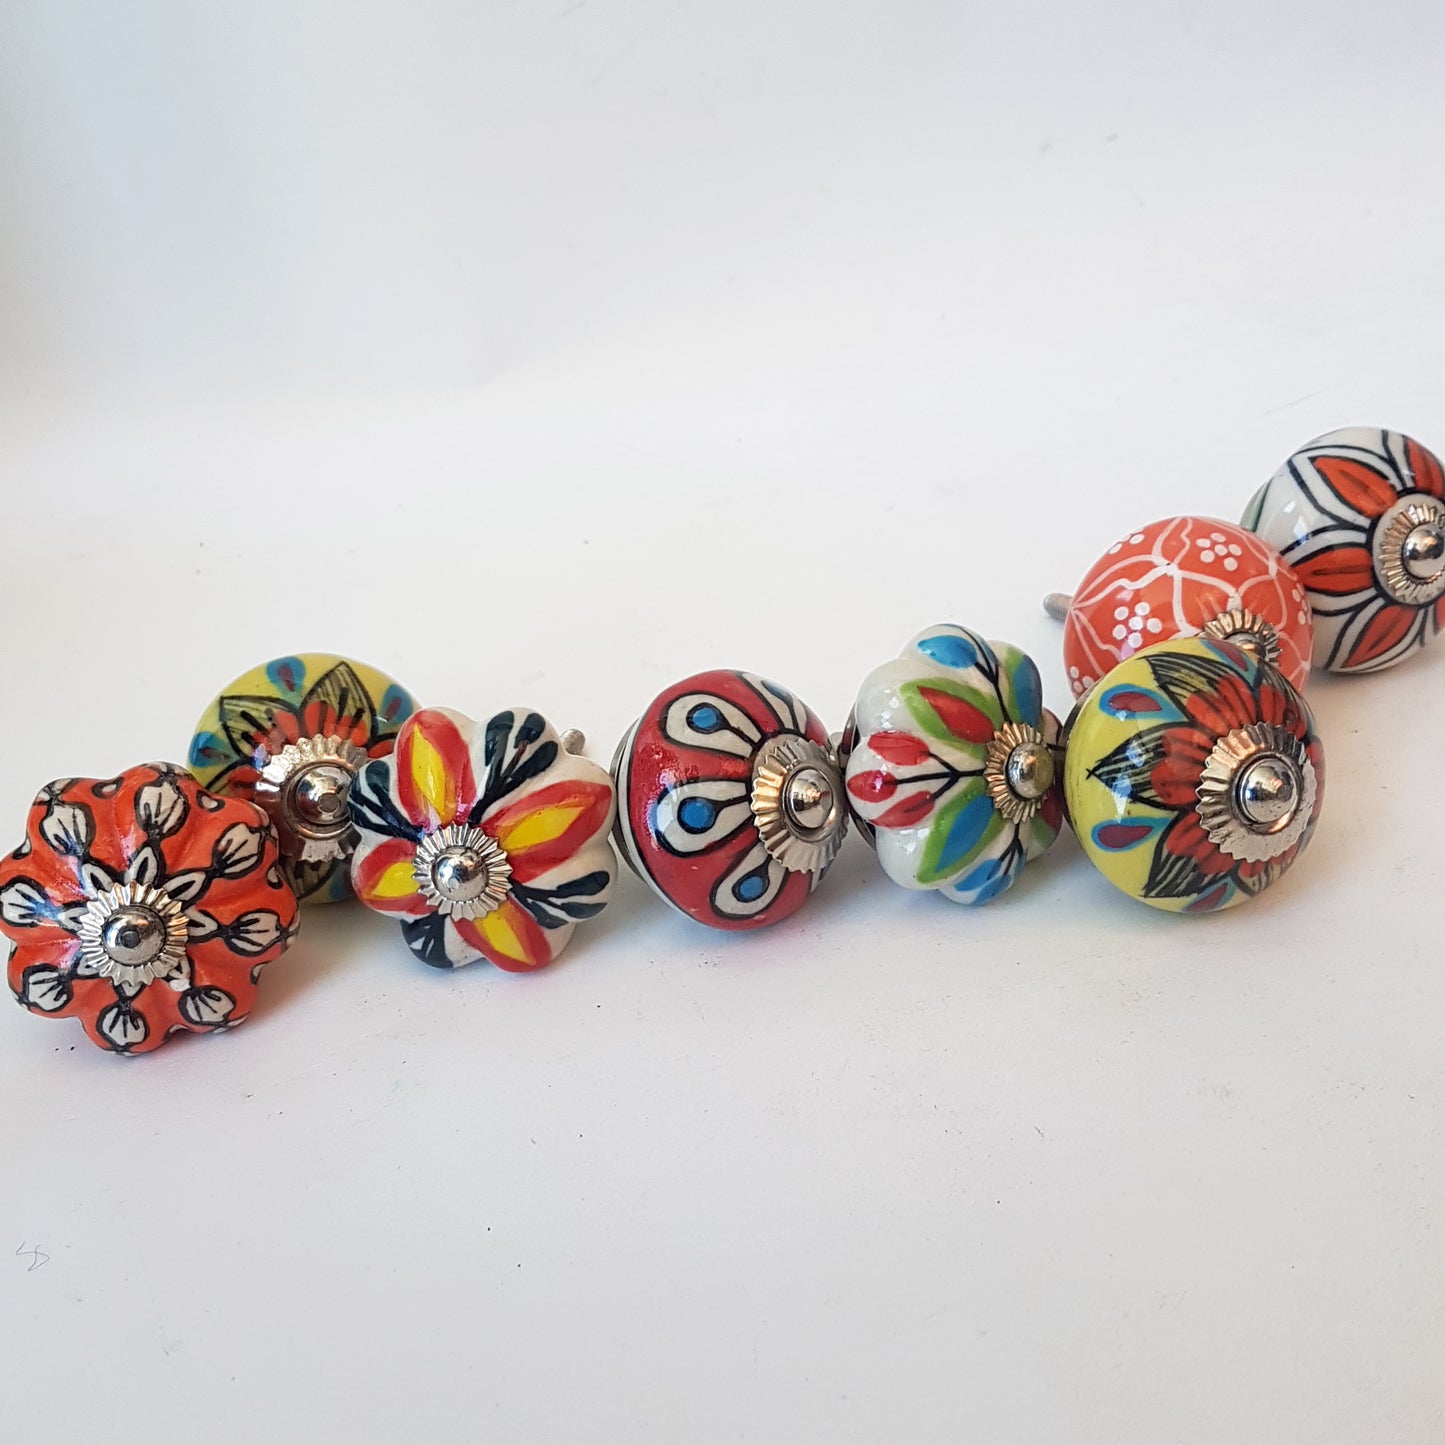 Collection Tropicale de 8 poignées de boutons peintes à la main pour armoires et placards, tiroirs de commode. Motifs floraux vibrants exclusifs.